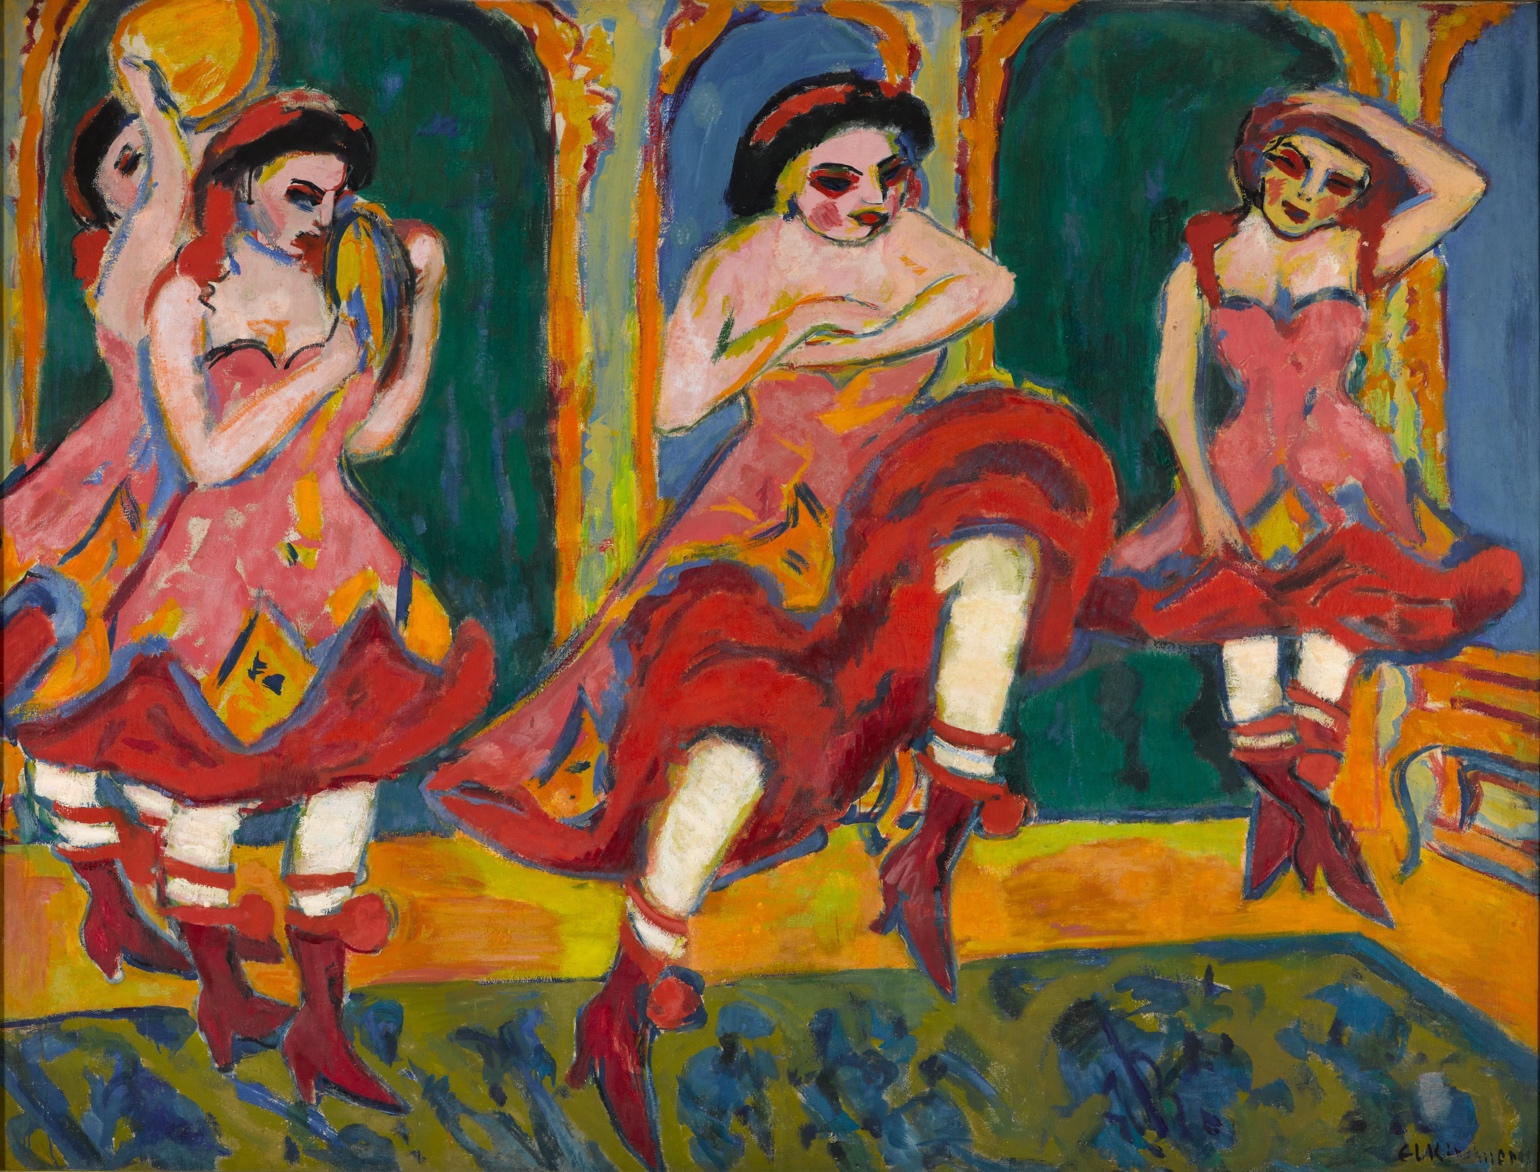 Ernst Ludwig Kirchner, Czardas Dancers. 1905